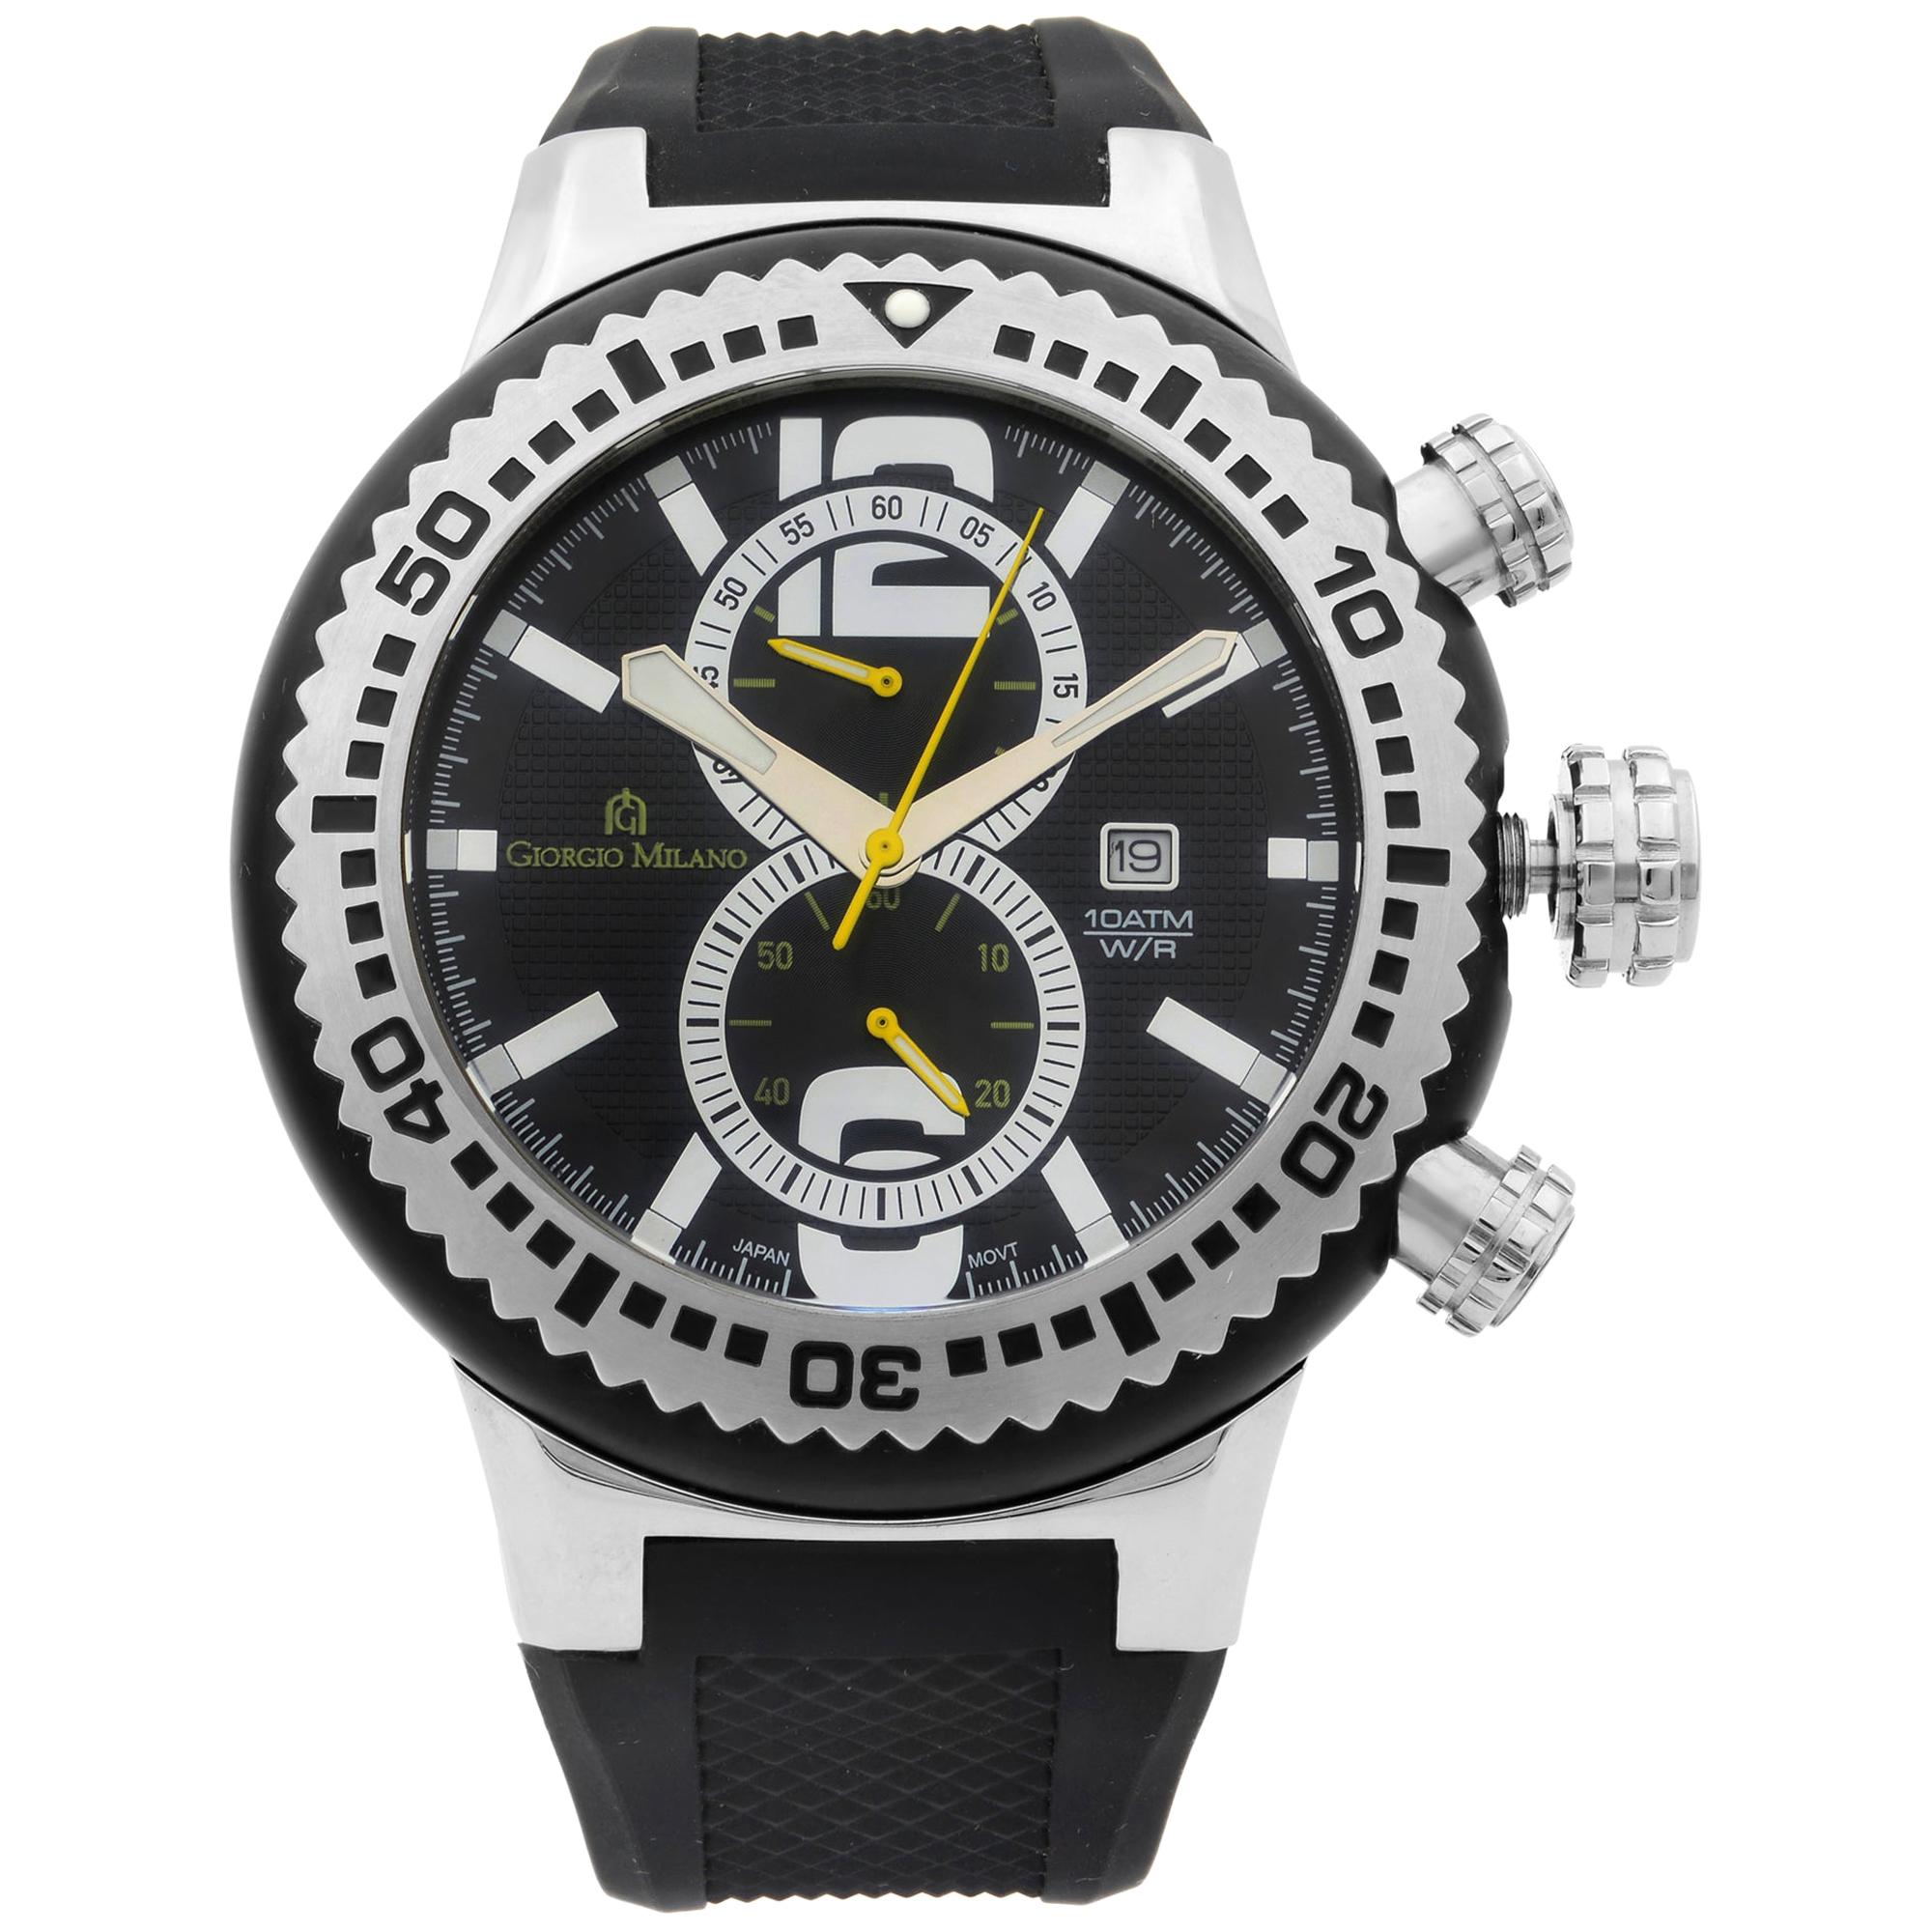 Giorgio Milano Stainless Steel Chronograph Quartz Men's Watch GM857SLBK